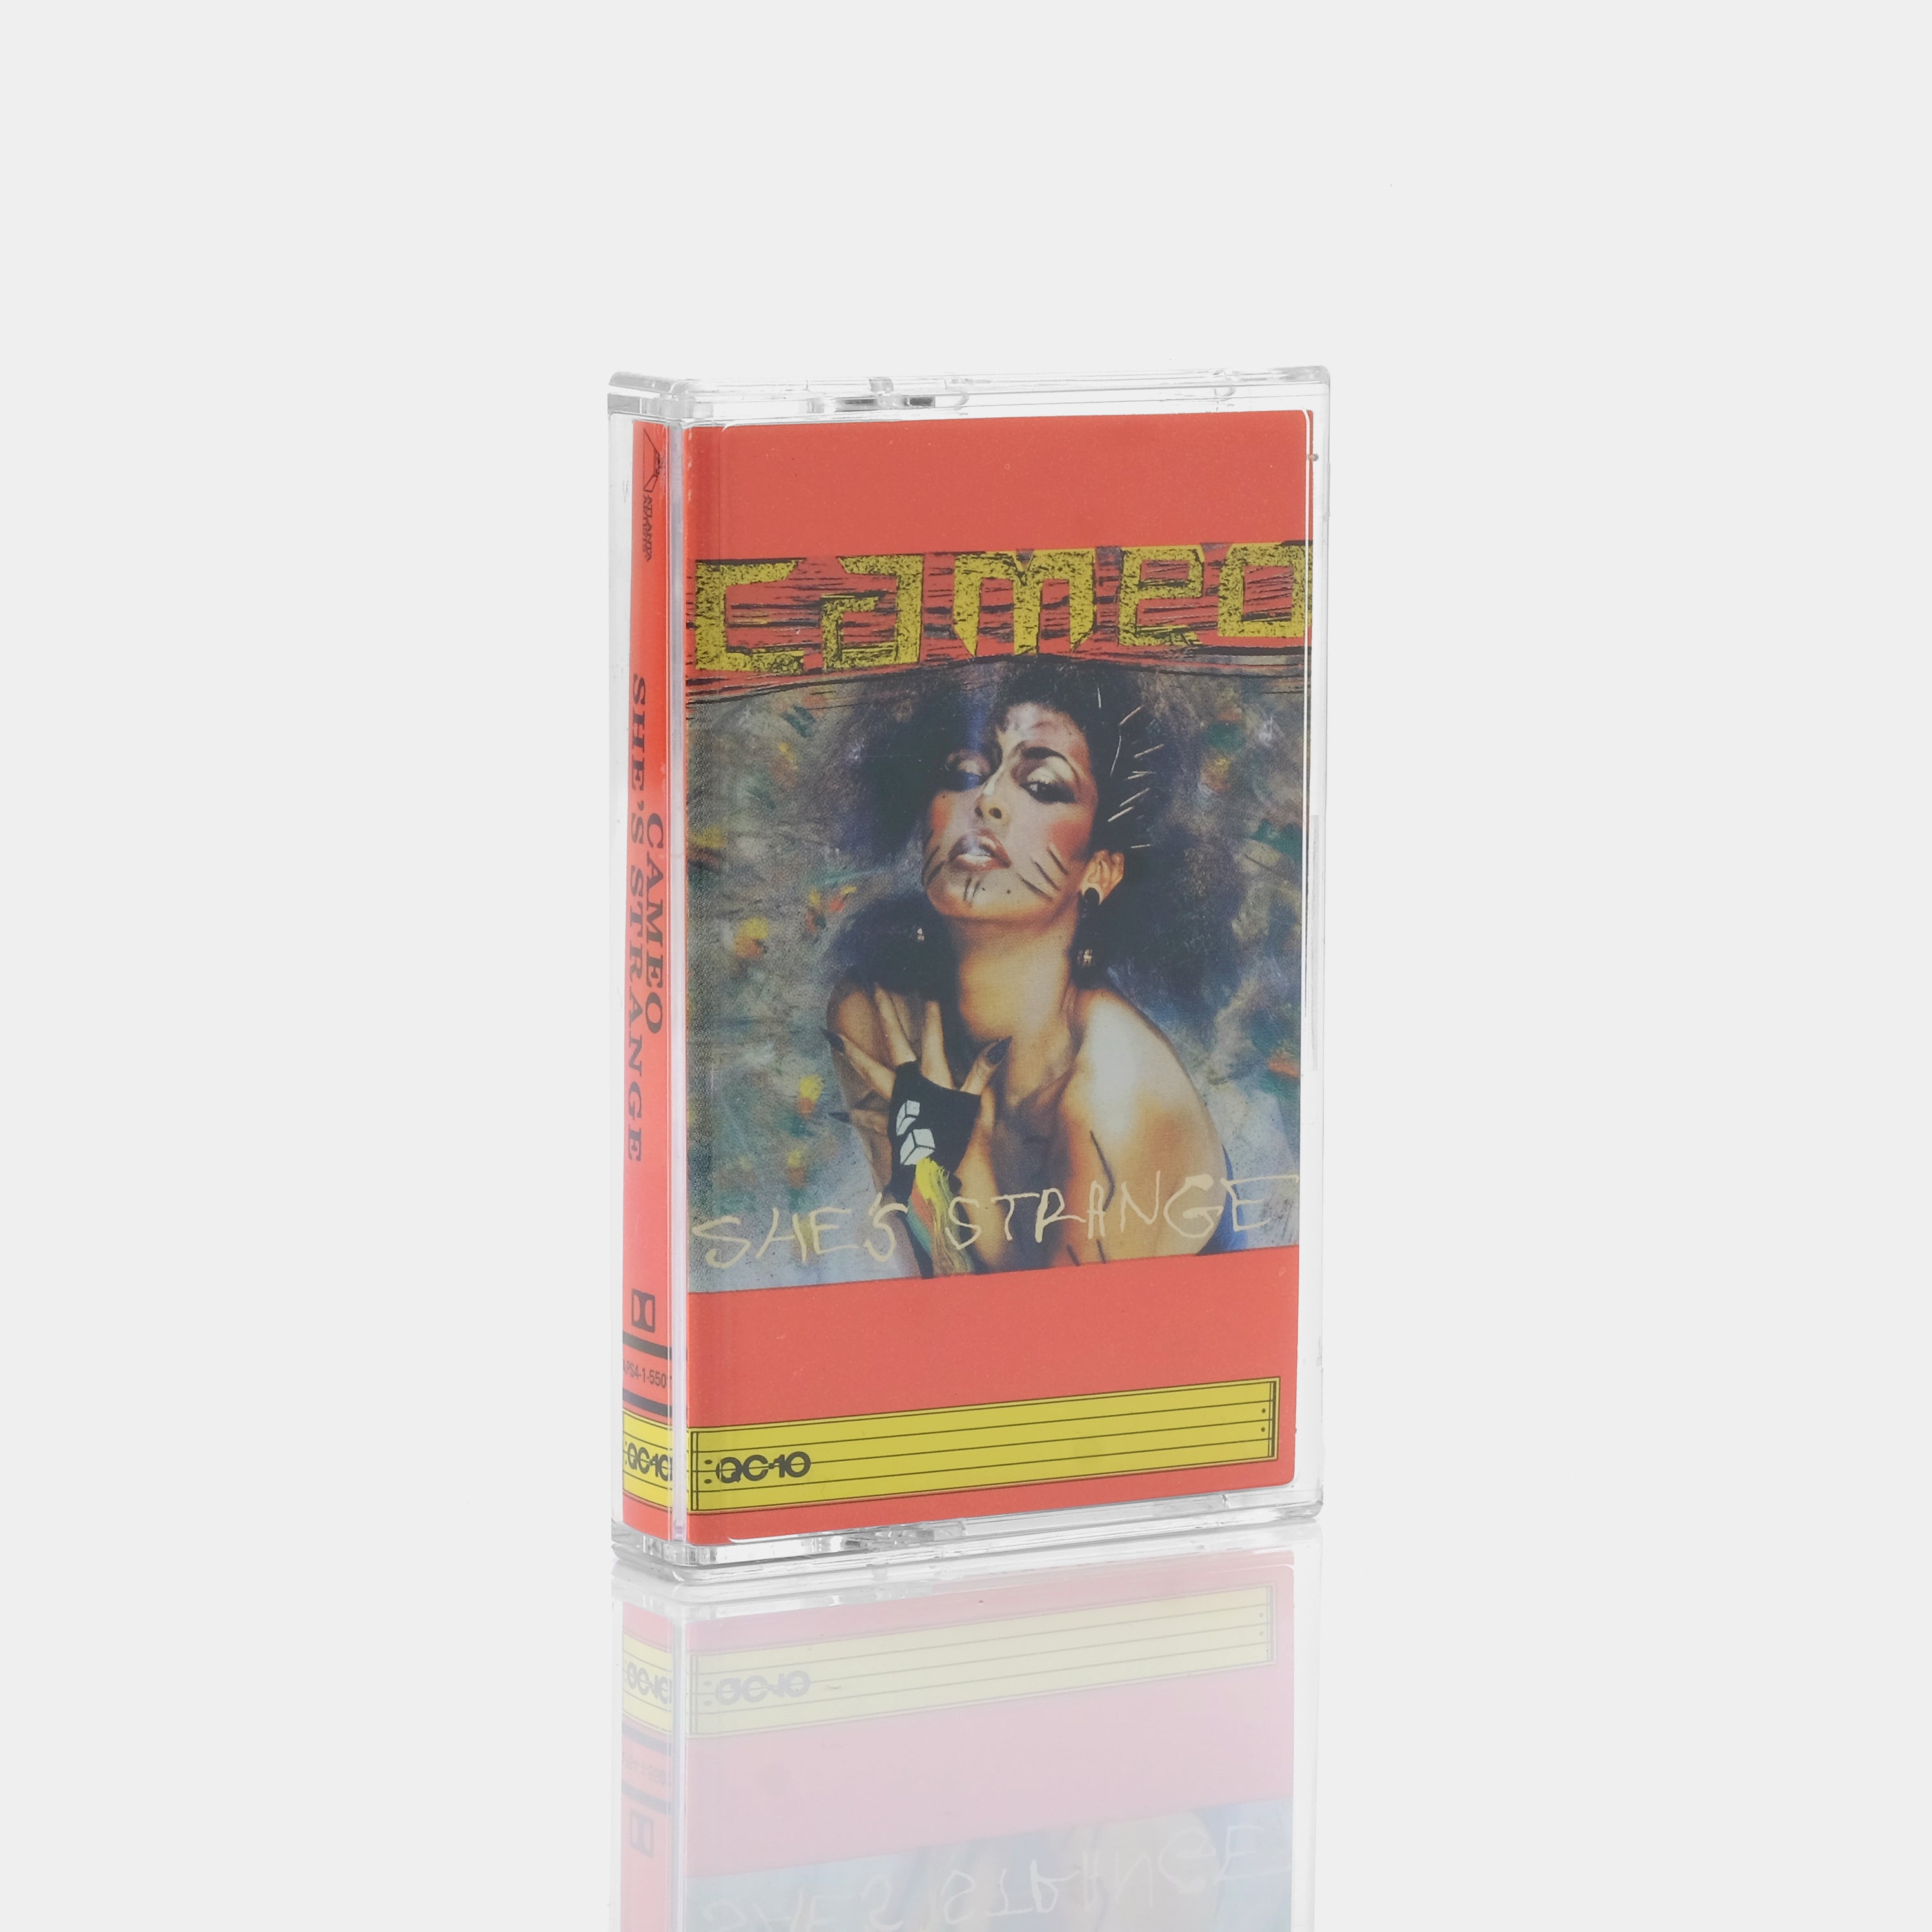 Cameo - She's Strange Cassette Tape